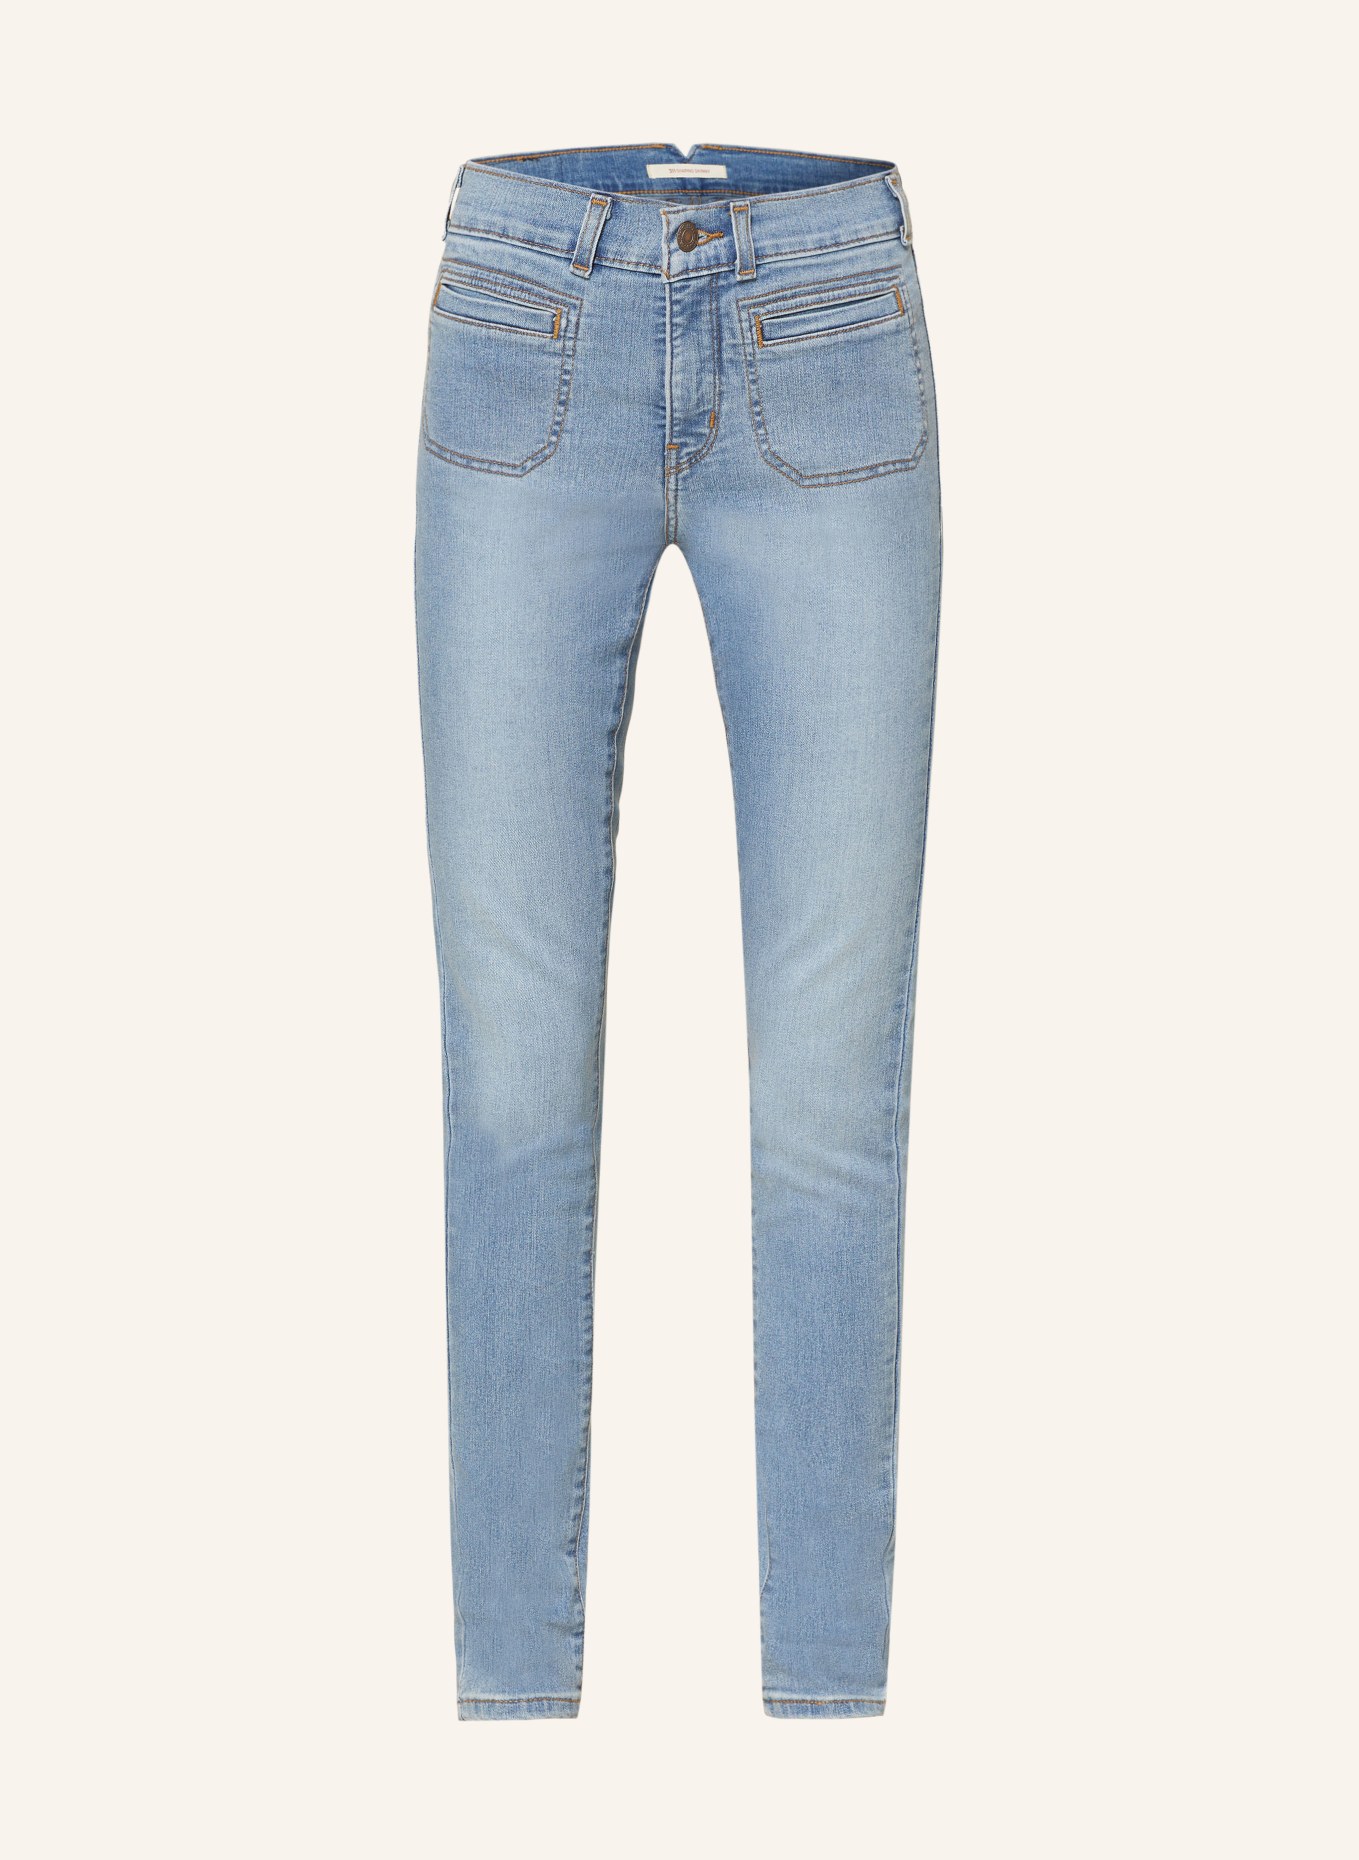 Levi's® Skinny Jeans 311, Farbe: 01 Med Indigo - Worn In (Bild 1)